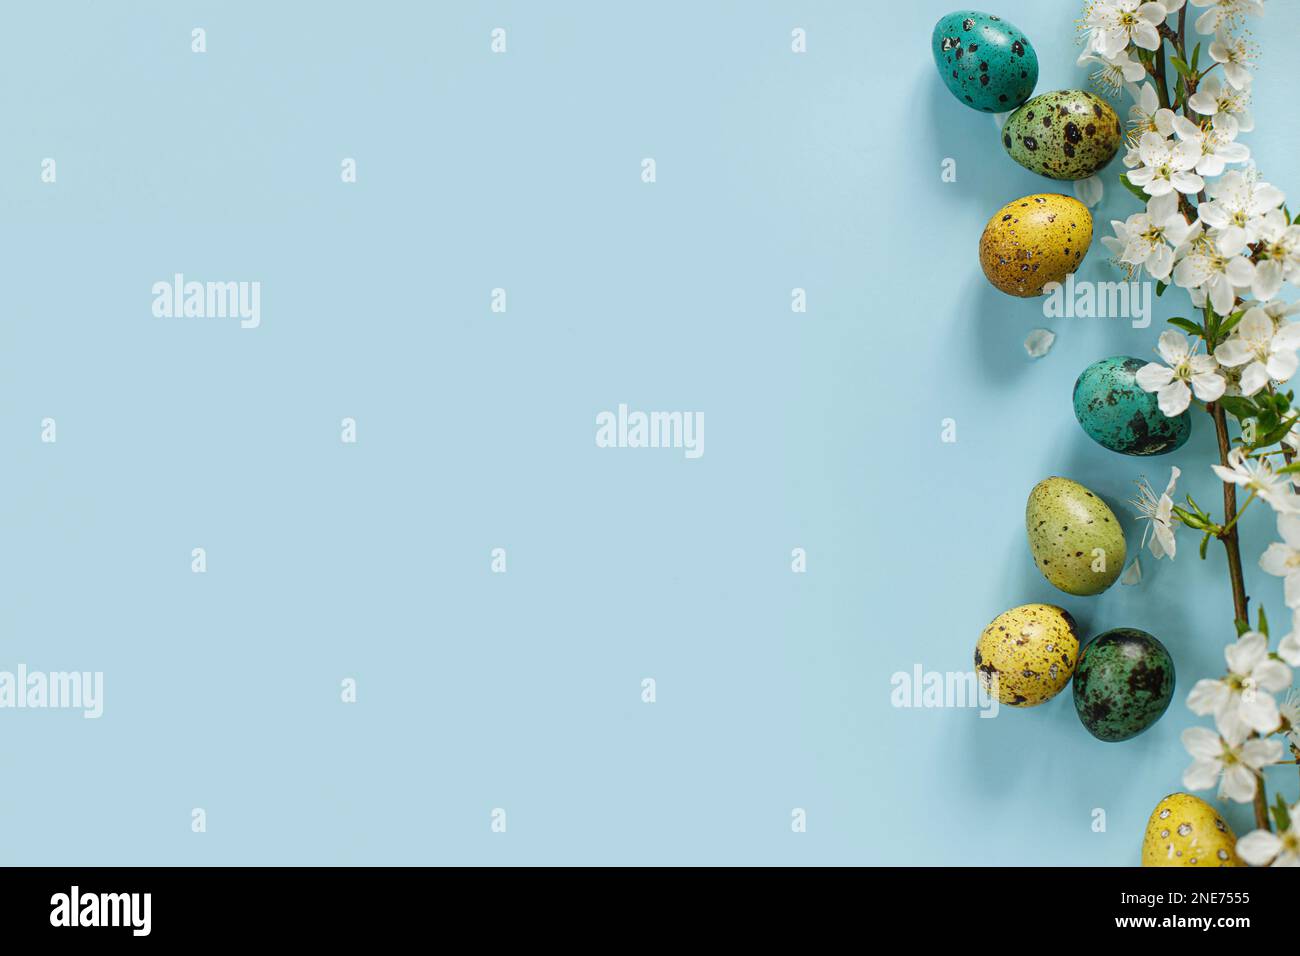 Buona Pasqua! Pasqua uova alla moda e fiori primaverili fioriti su sfondo blu, spazio per il testo. Biglietto d'auguri o banner moderno. Colo dipinto naturale Foto Stock